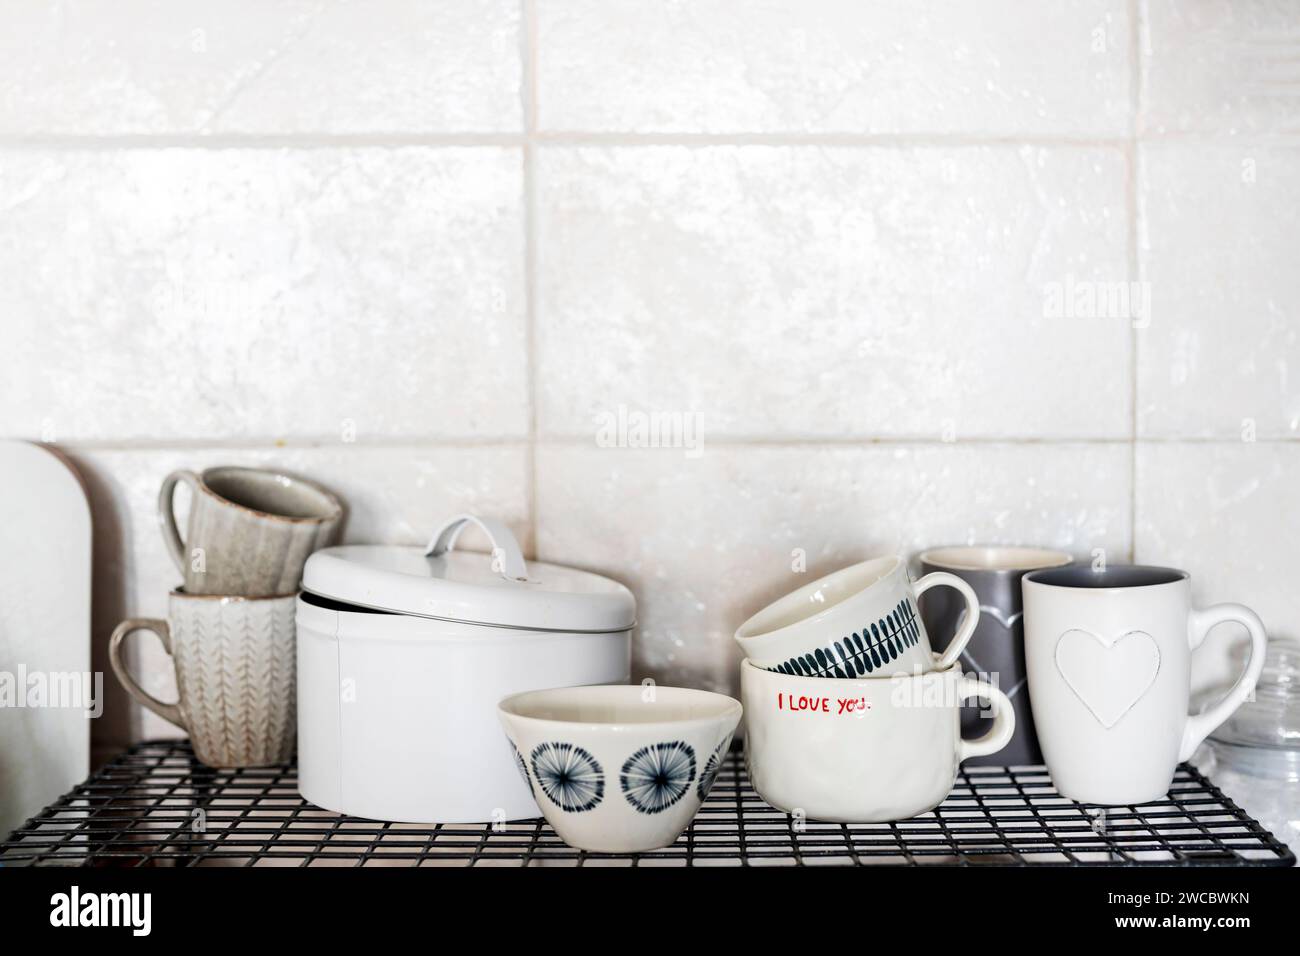 Grau-weiße Tassen mit Herzen und der Inschrift - I love you auf einem Regal in der Küche vor dem Hintergrund einer grau gekachelten Wand. Stockfoto